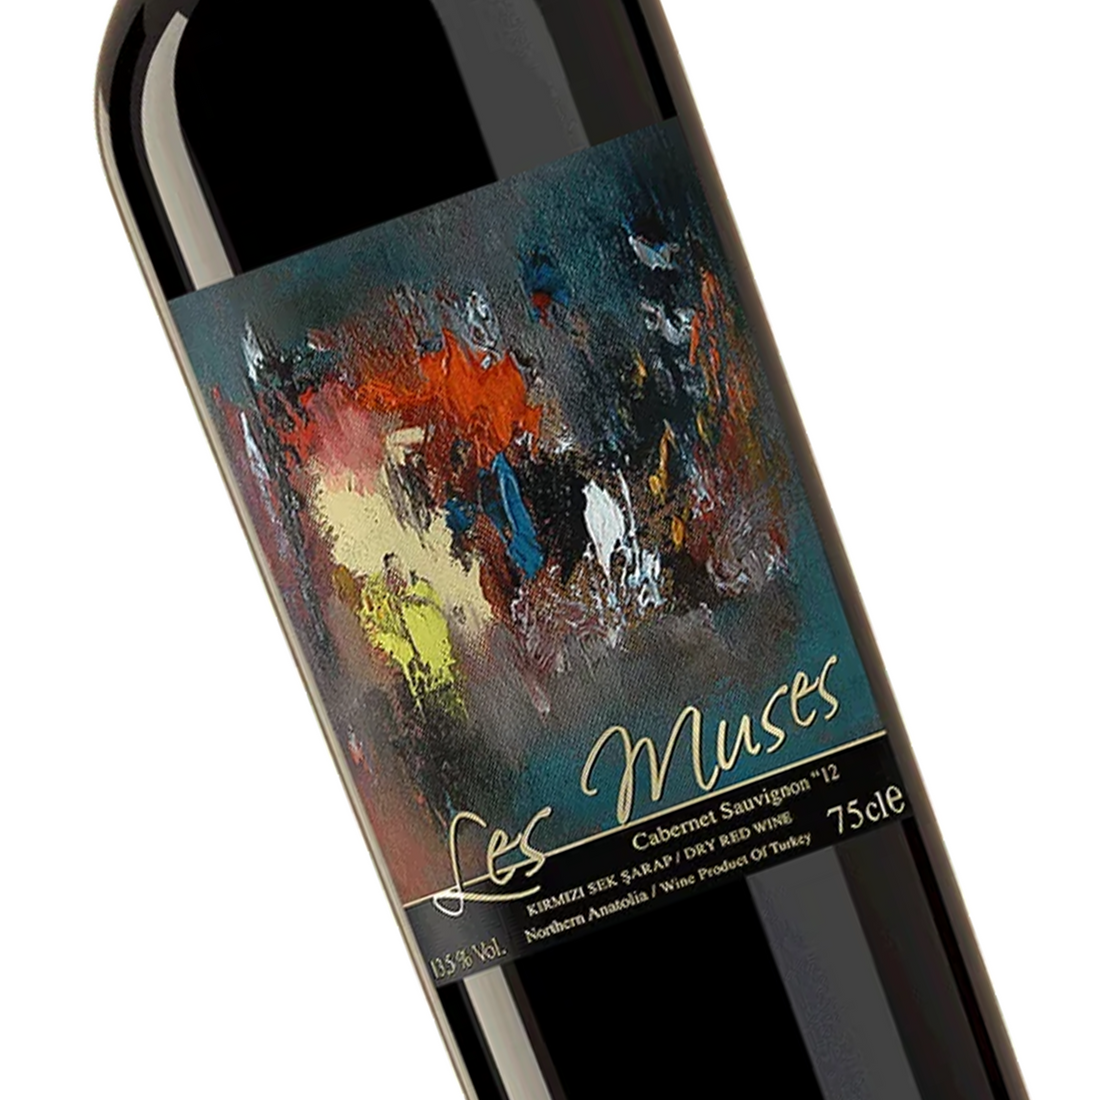 ディレン レ・ミューズ 750ml 辛口 トルコ 赤ワイン | Diren Les Muses Kirmizi Sek Sarap | Dry Red Wine